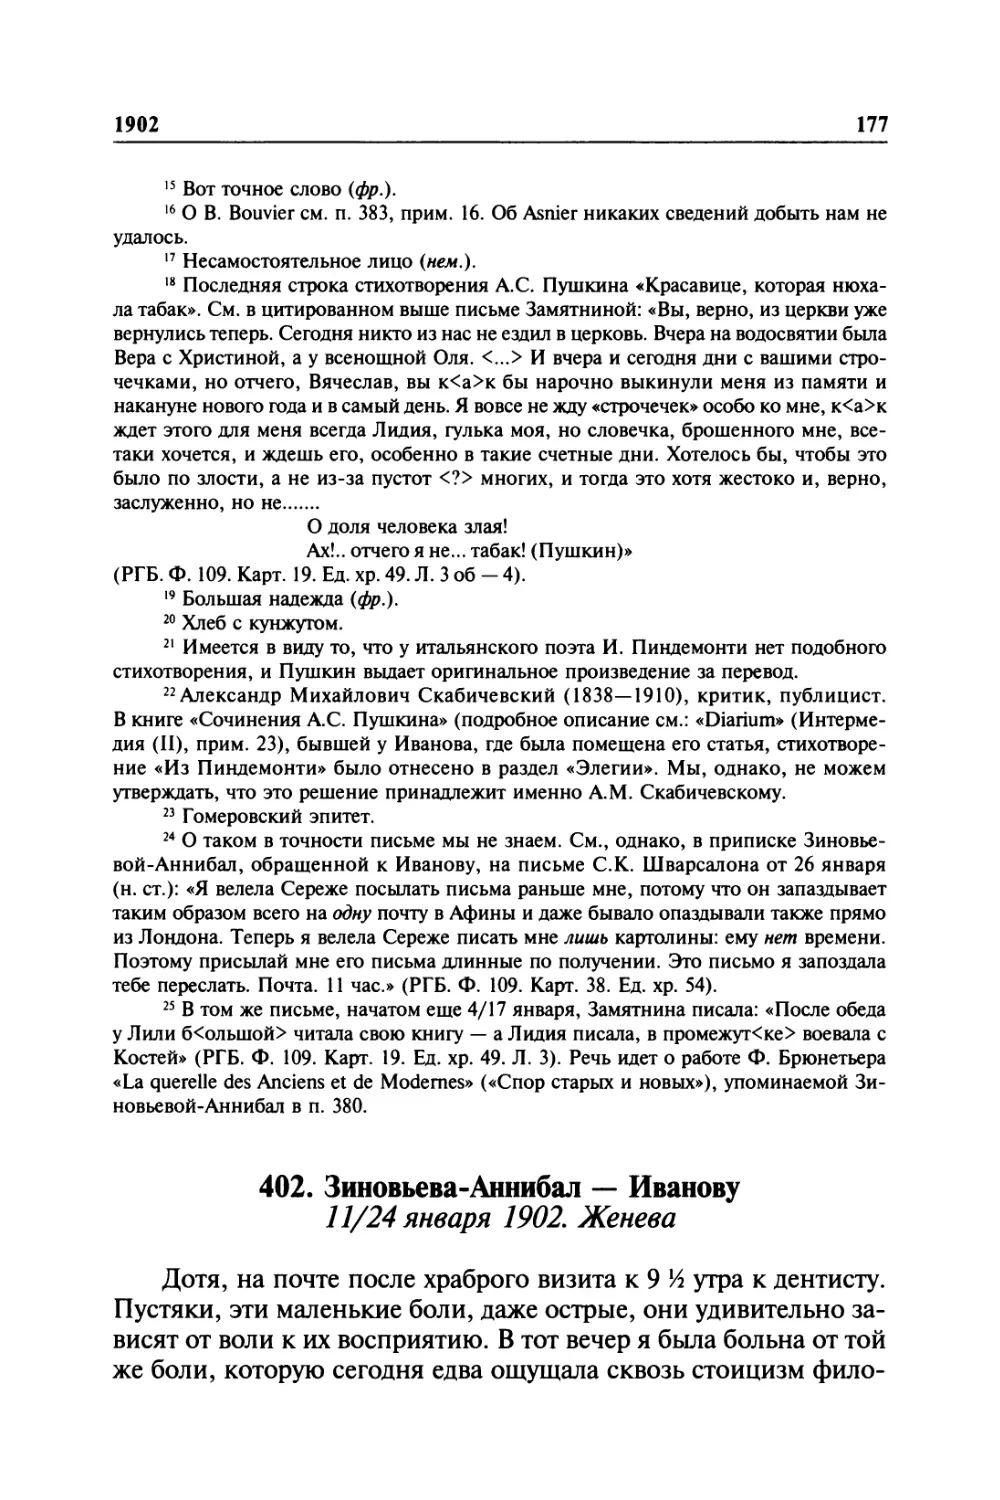 402. Зиновьева-Аннибал — Иванову. 11/24 января 1902. Женева